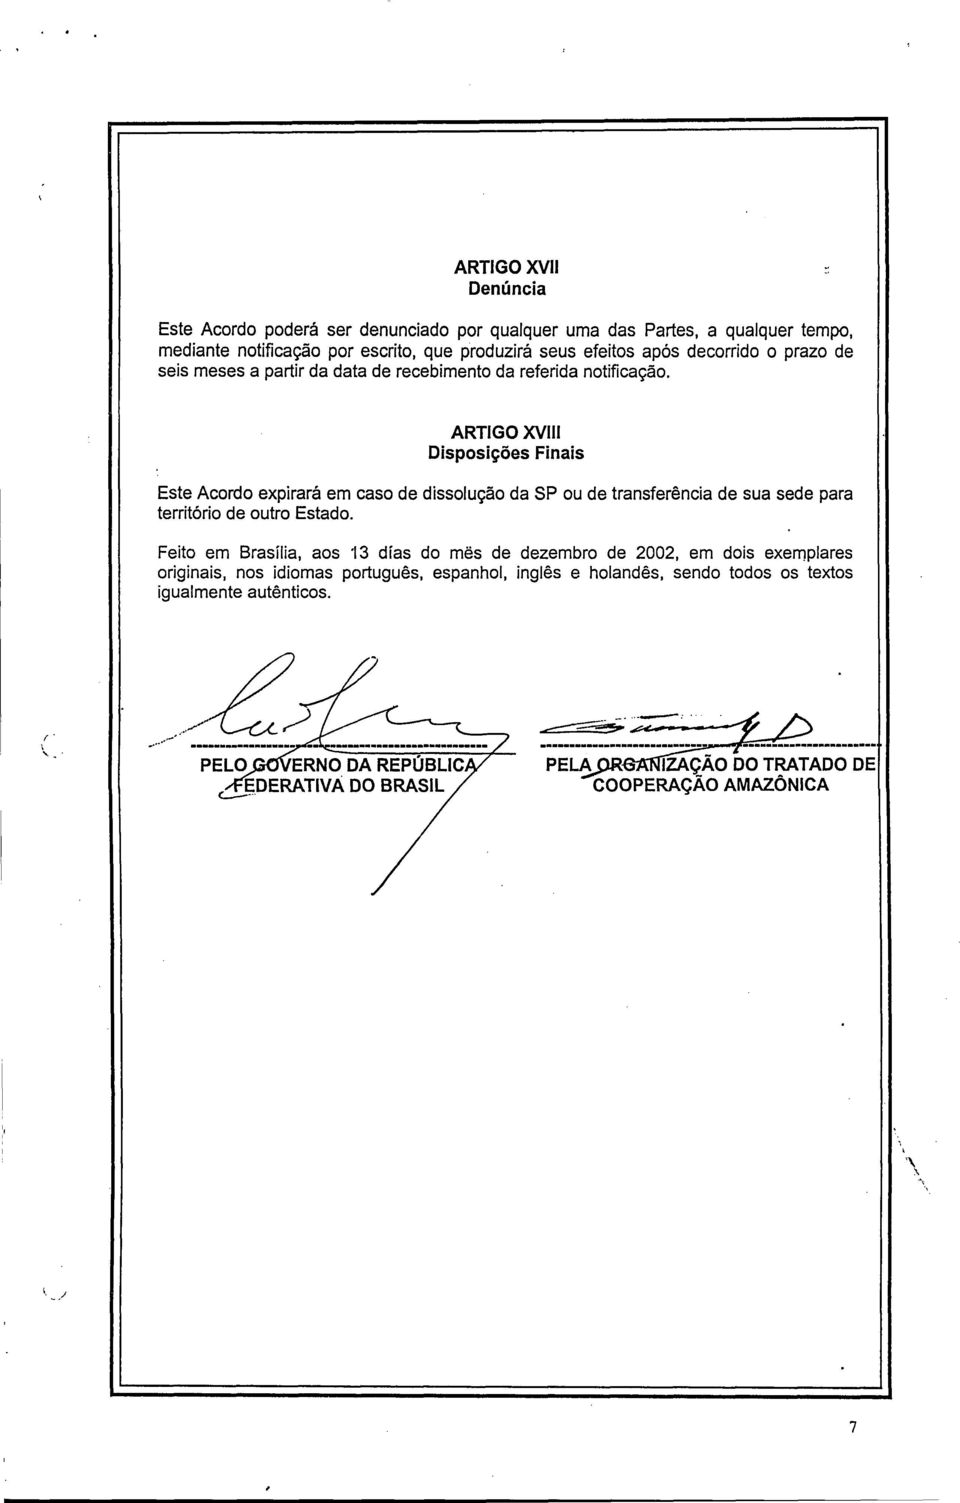 ARTIGO XVIII Disposições Finais Este Acordo expirará em caso de dissolução da SP ou de transferência de sua sede para território de outro Estado.